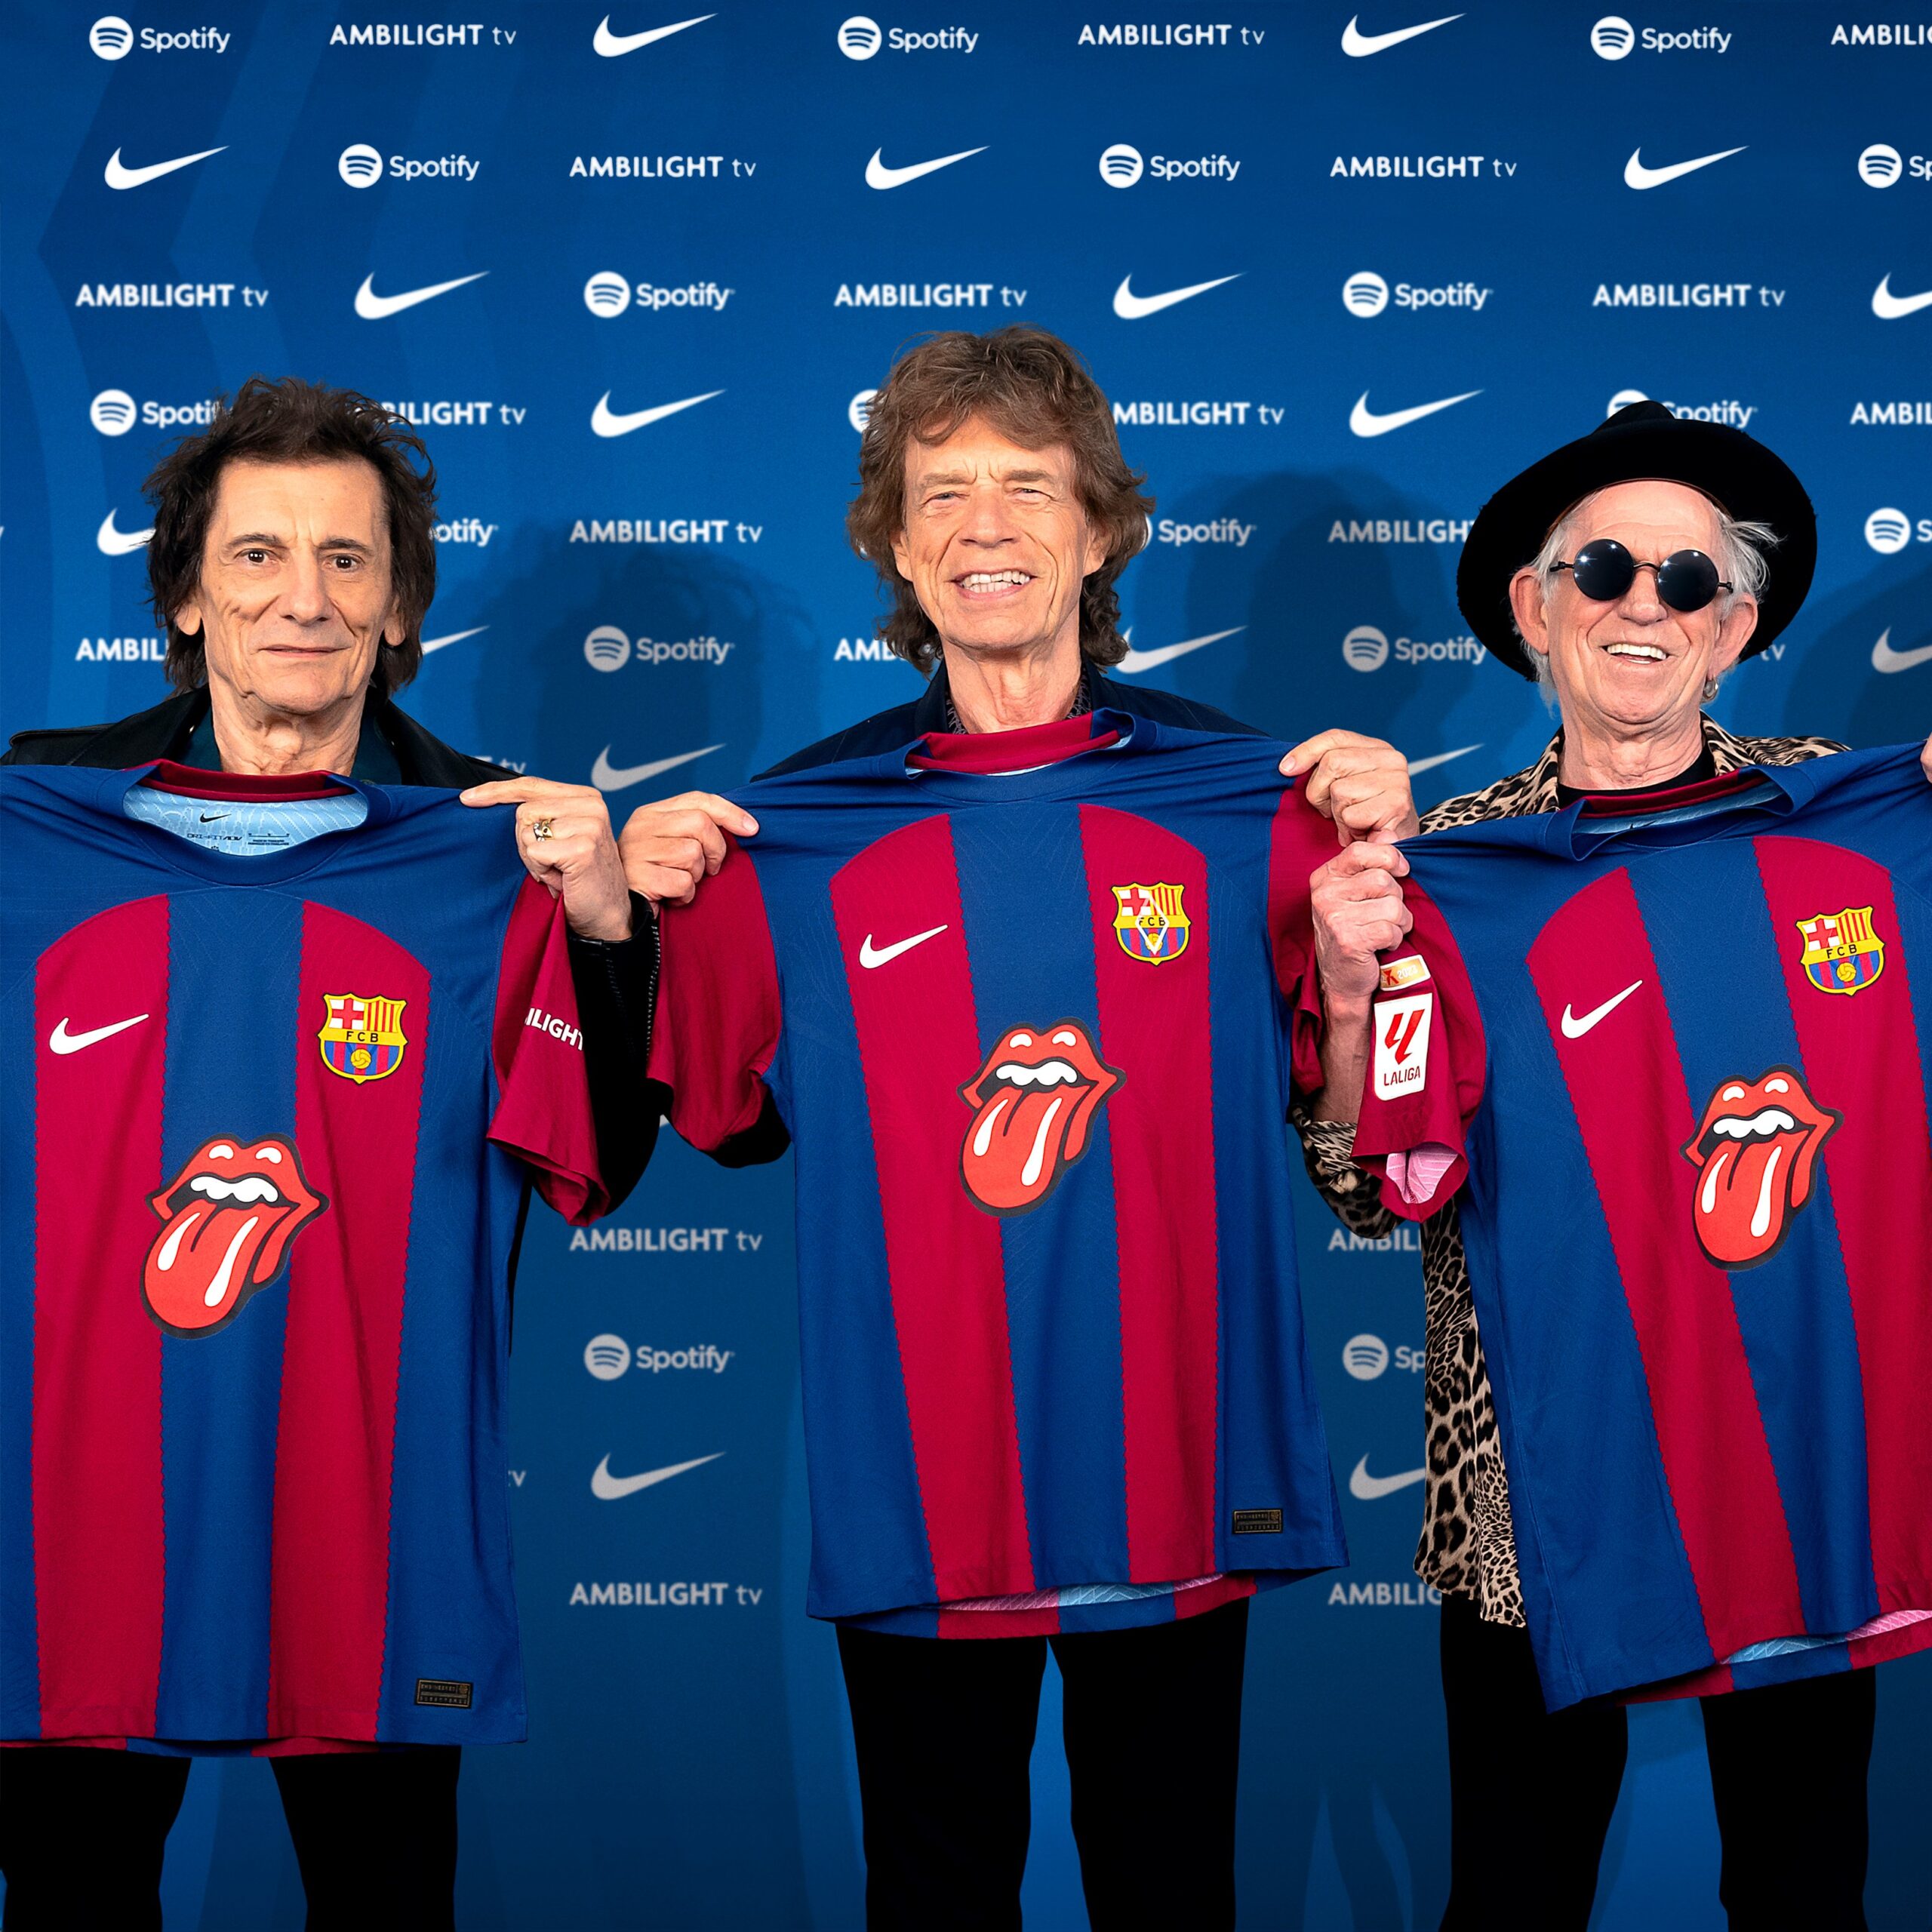 Le maillot spécial "Rolling Stones" pour le classico Barça / Real du 28 octobre prochain. - rolling stones 1 scaled